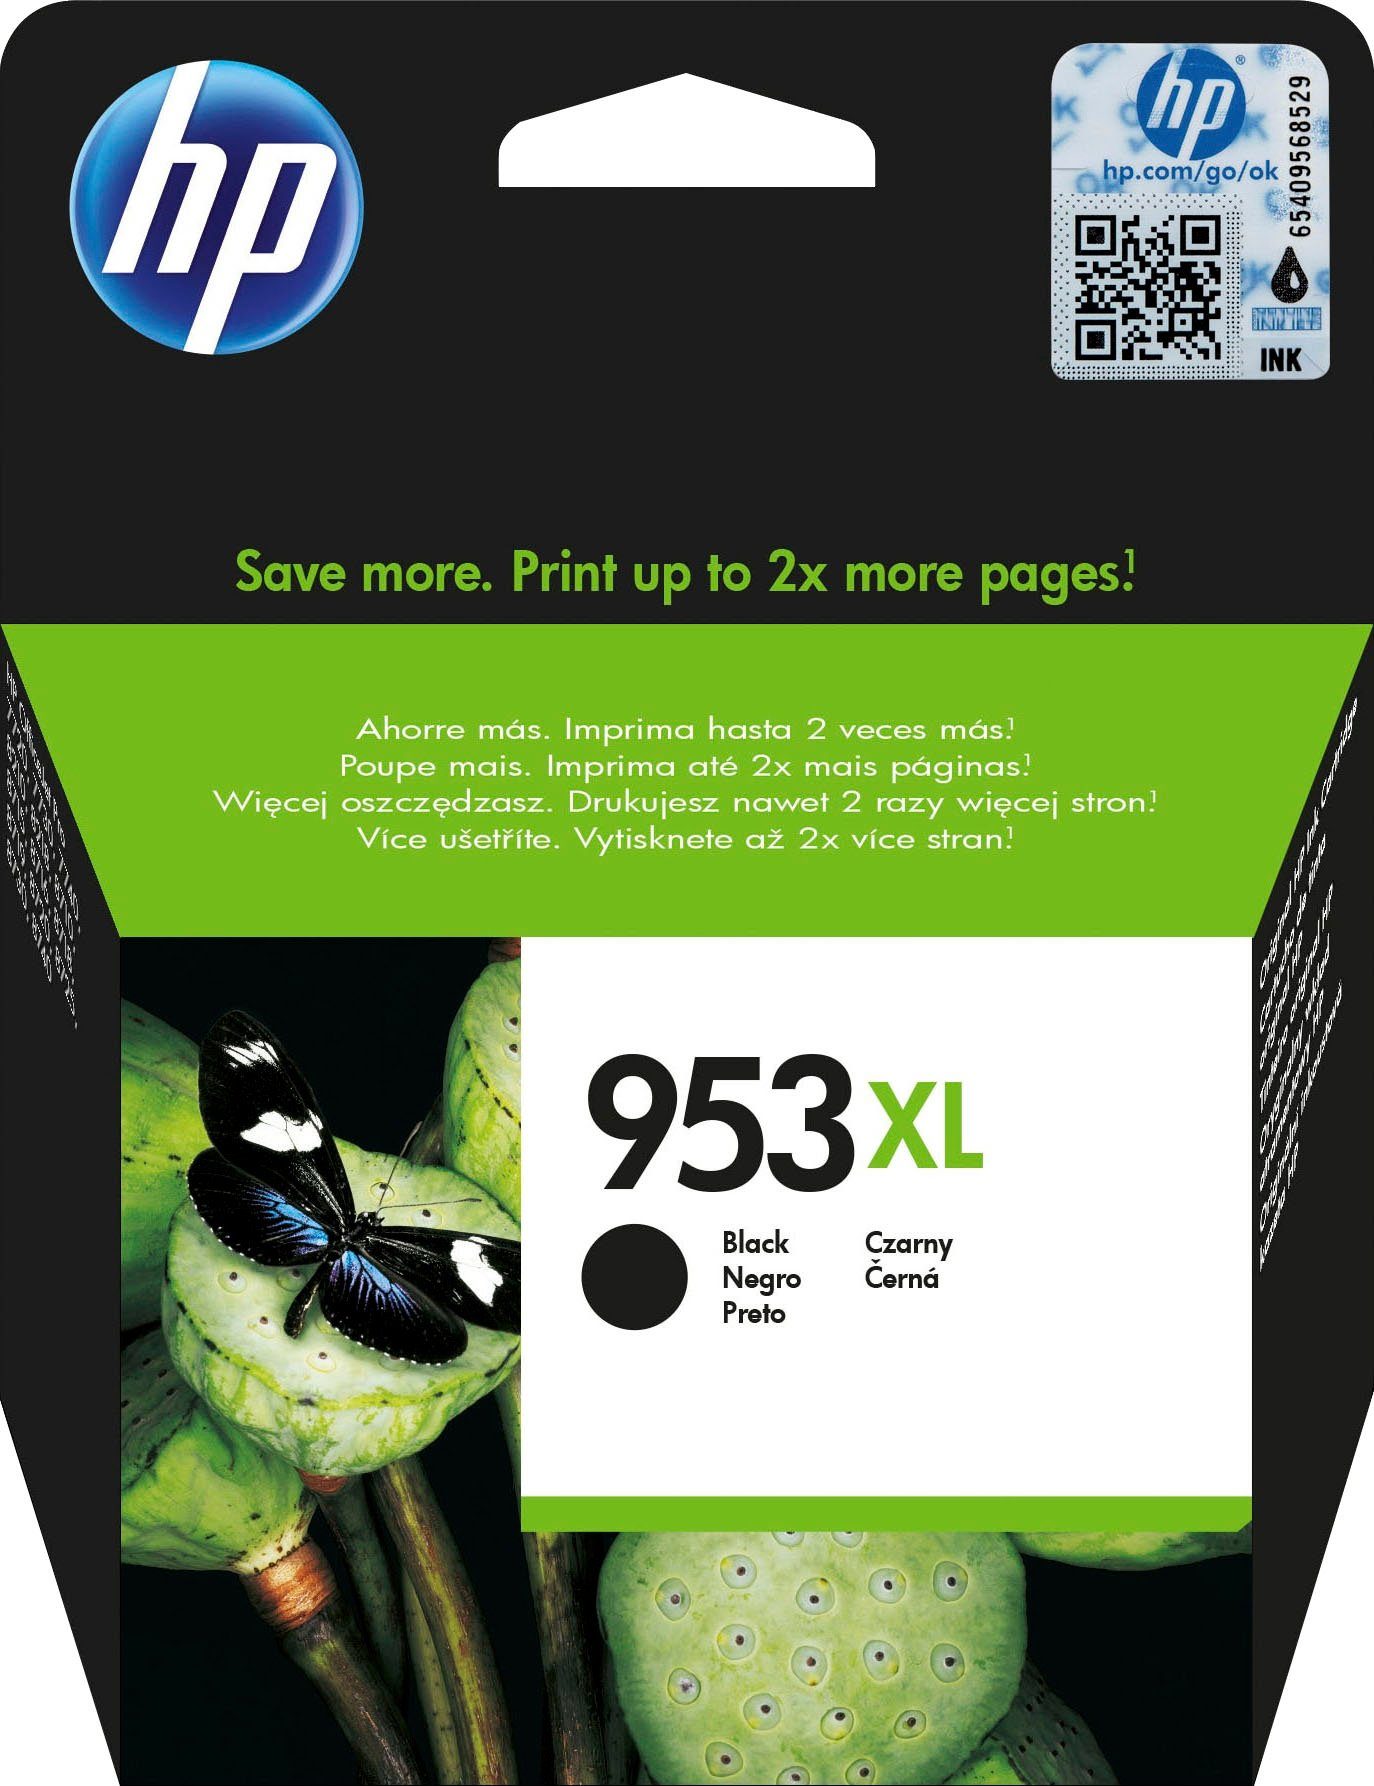 Tintenpatronen Nachfüllset für HP 953 (XL)